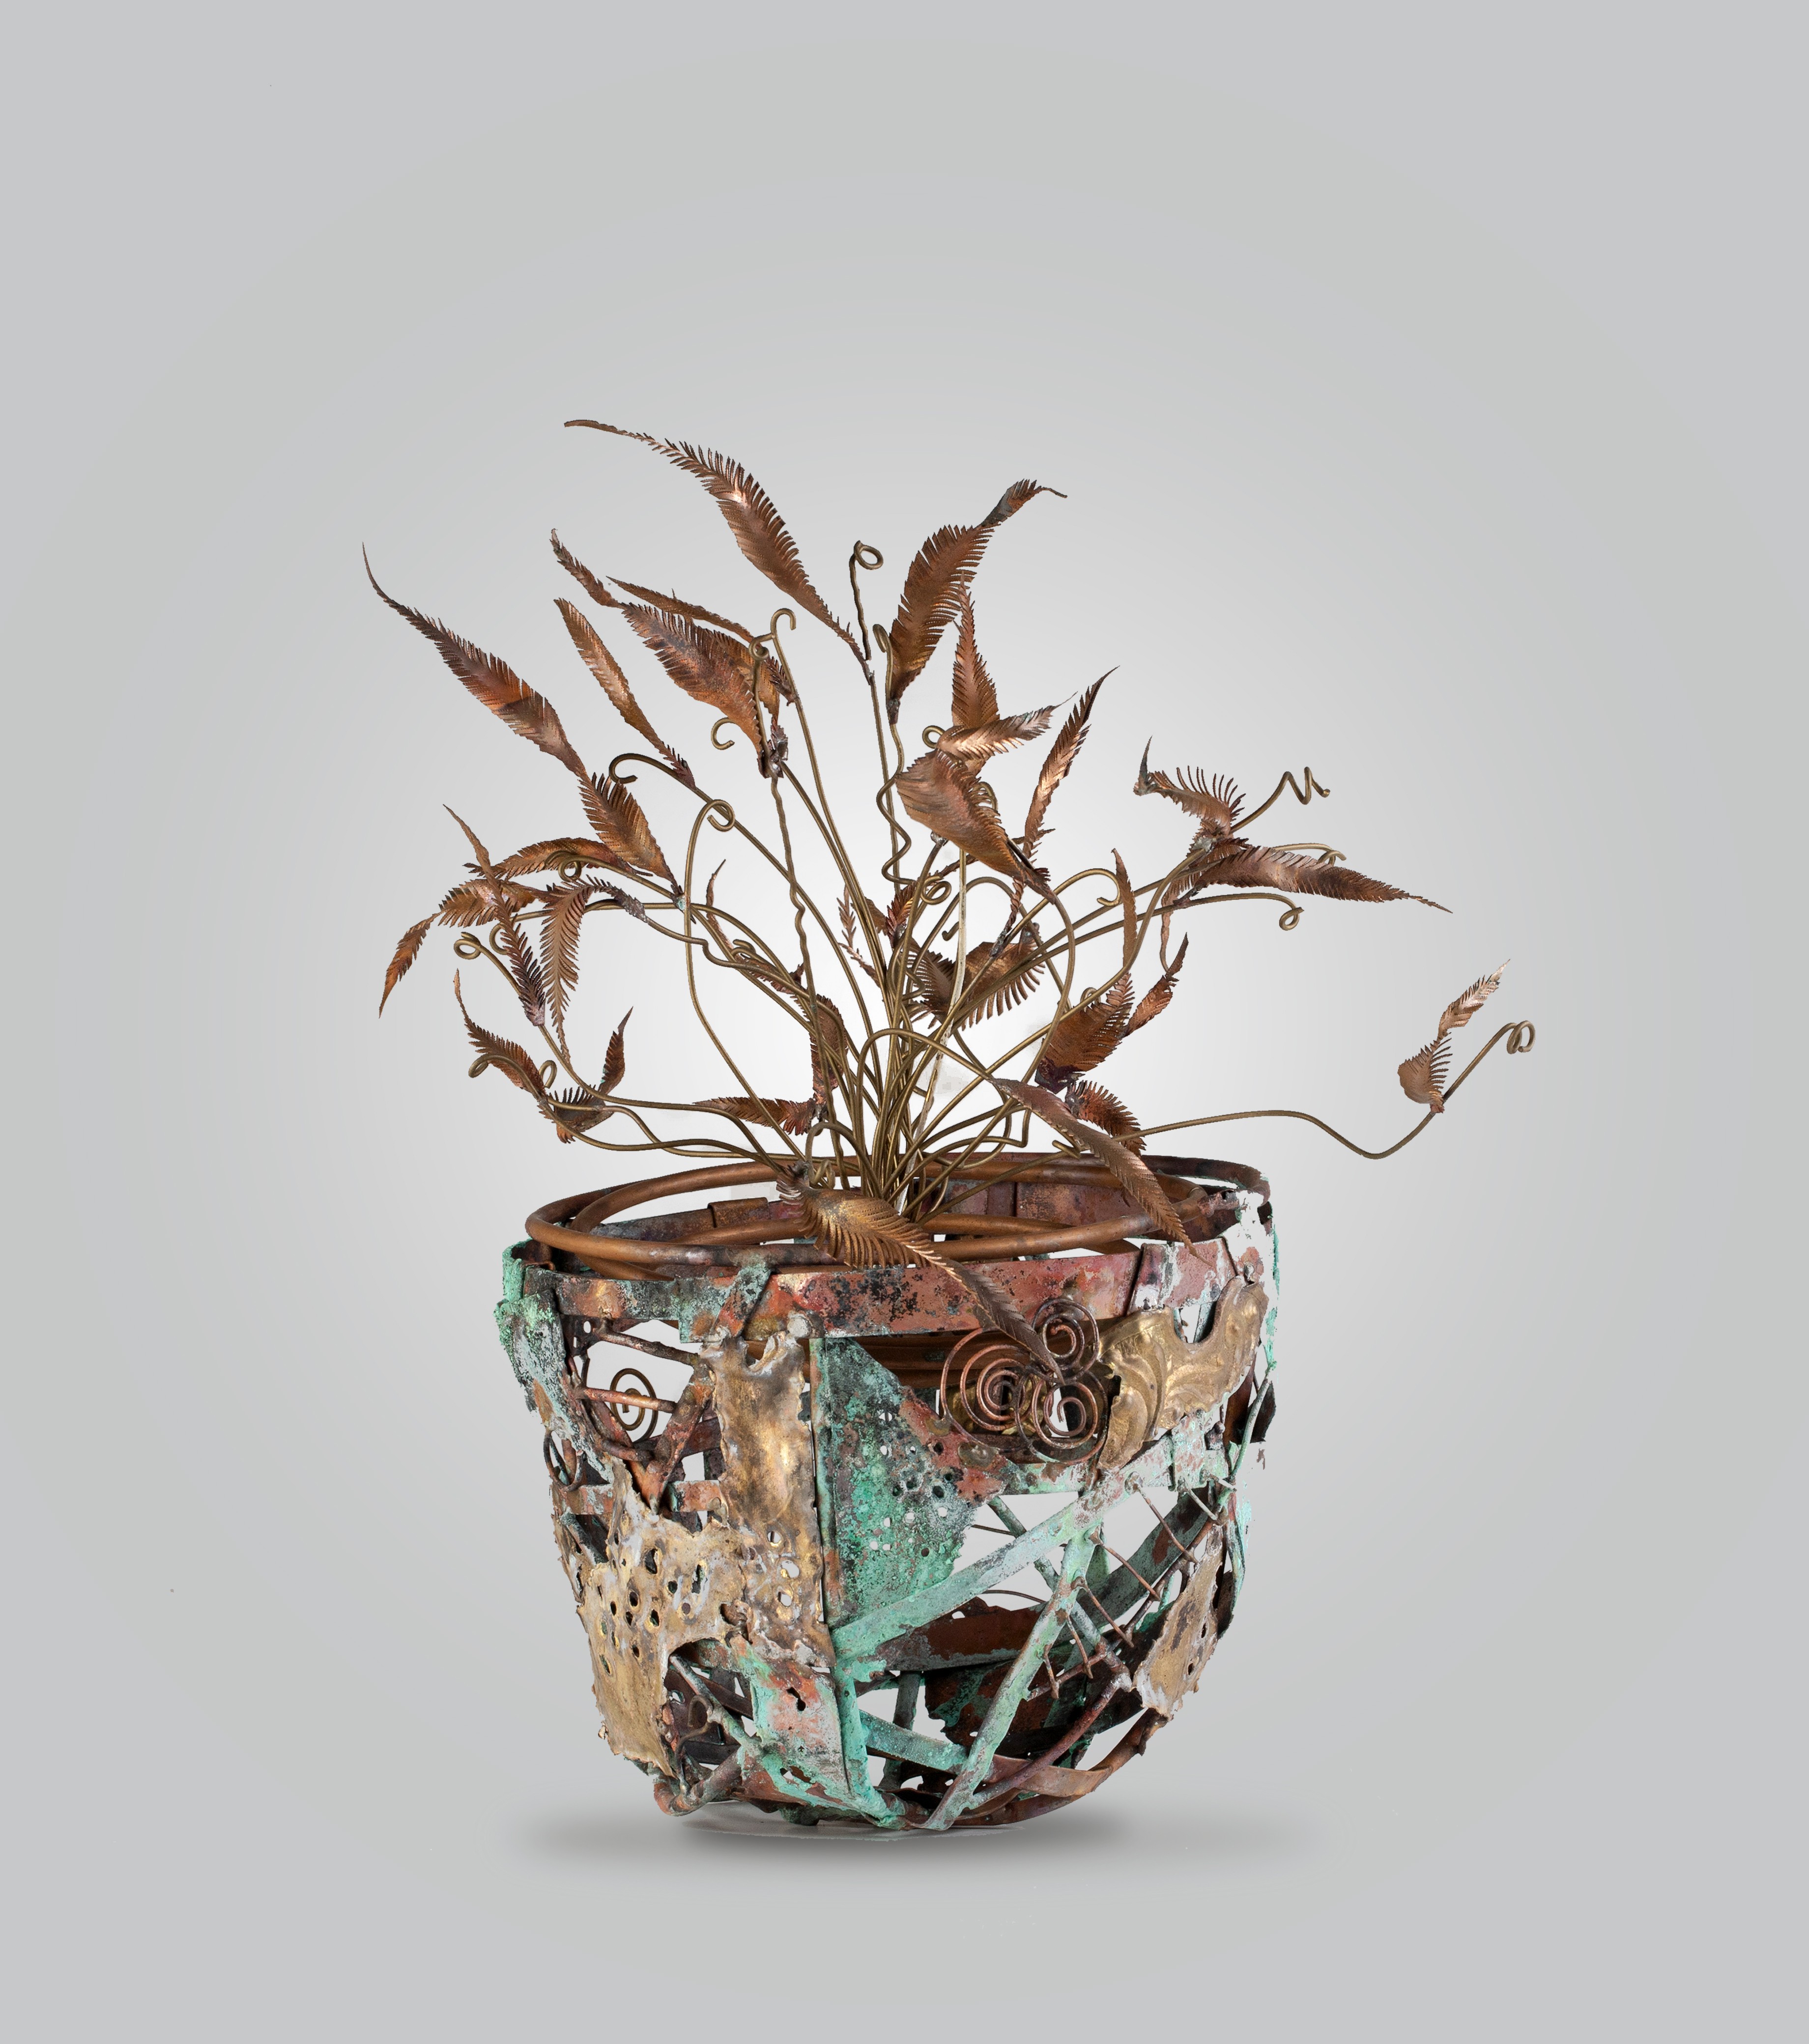 Vase 2 by Sachira Lakshan